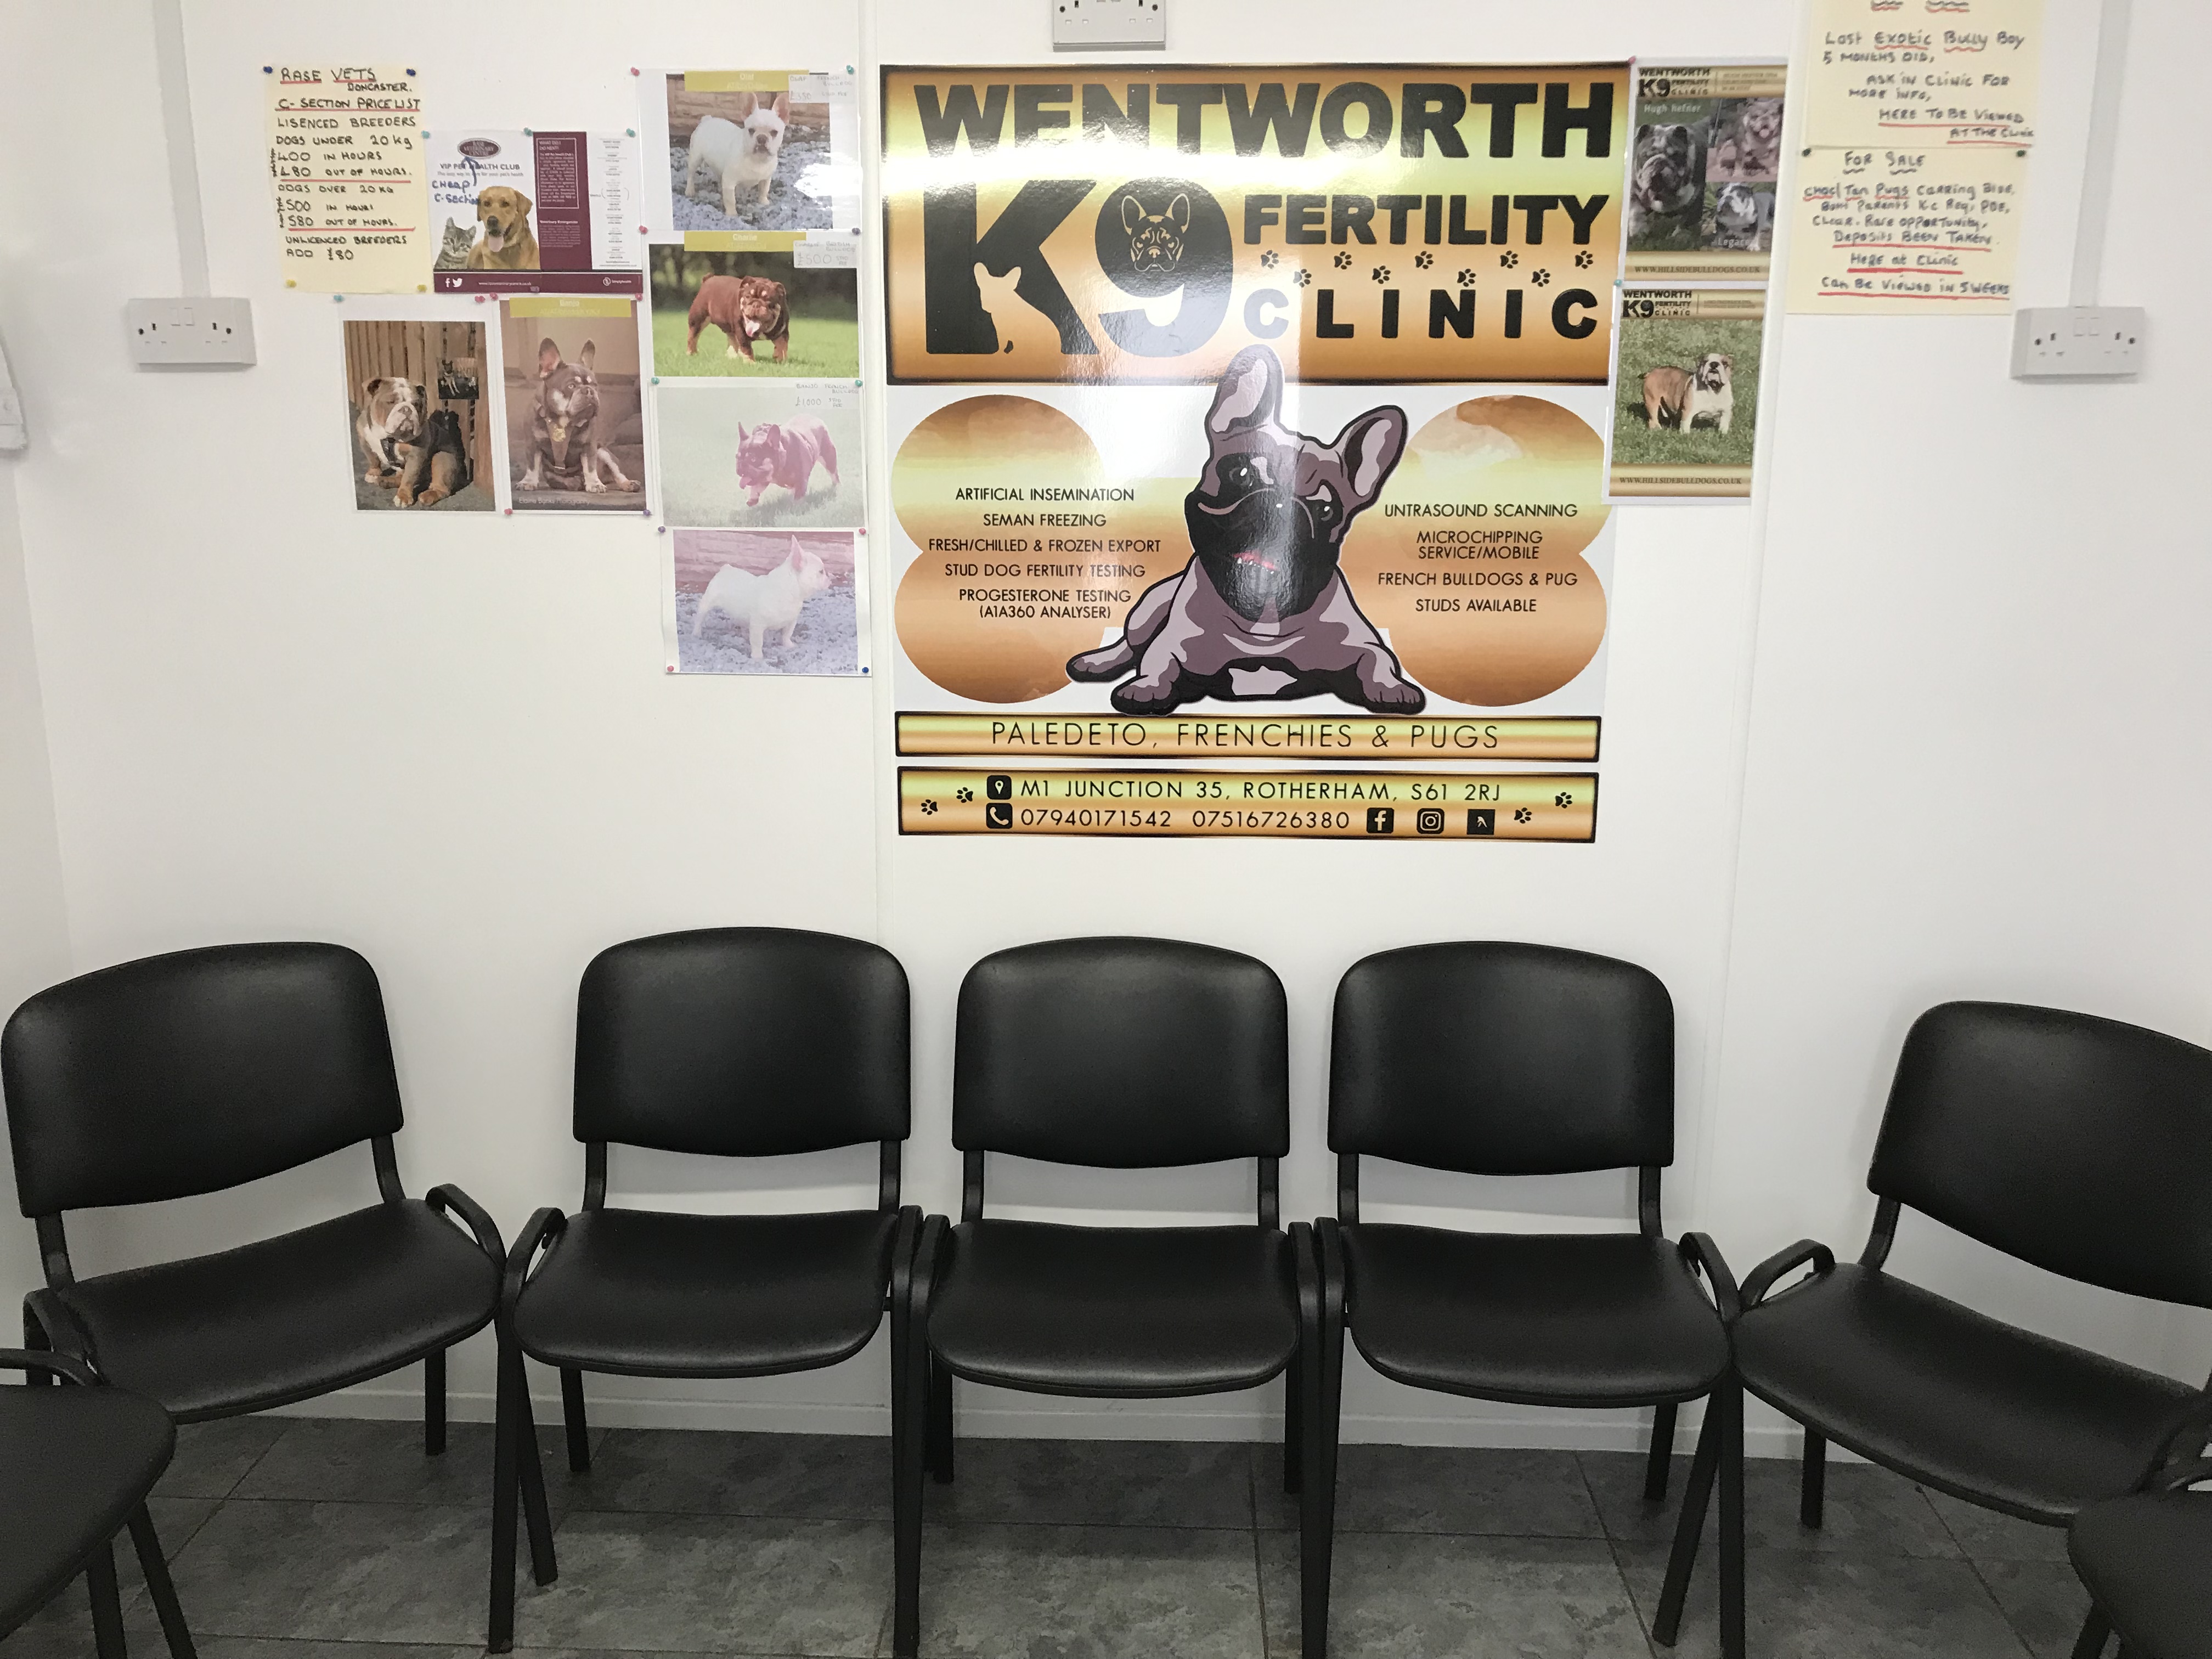 Wentworth K9 Fertility Clinic A premier dog fertility clinic